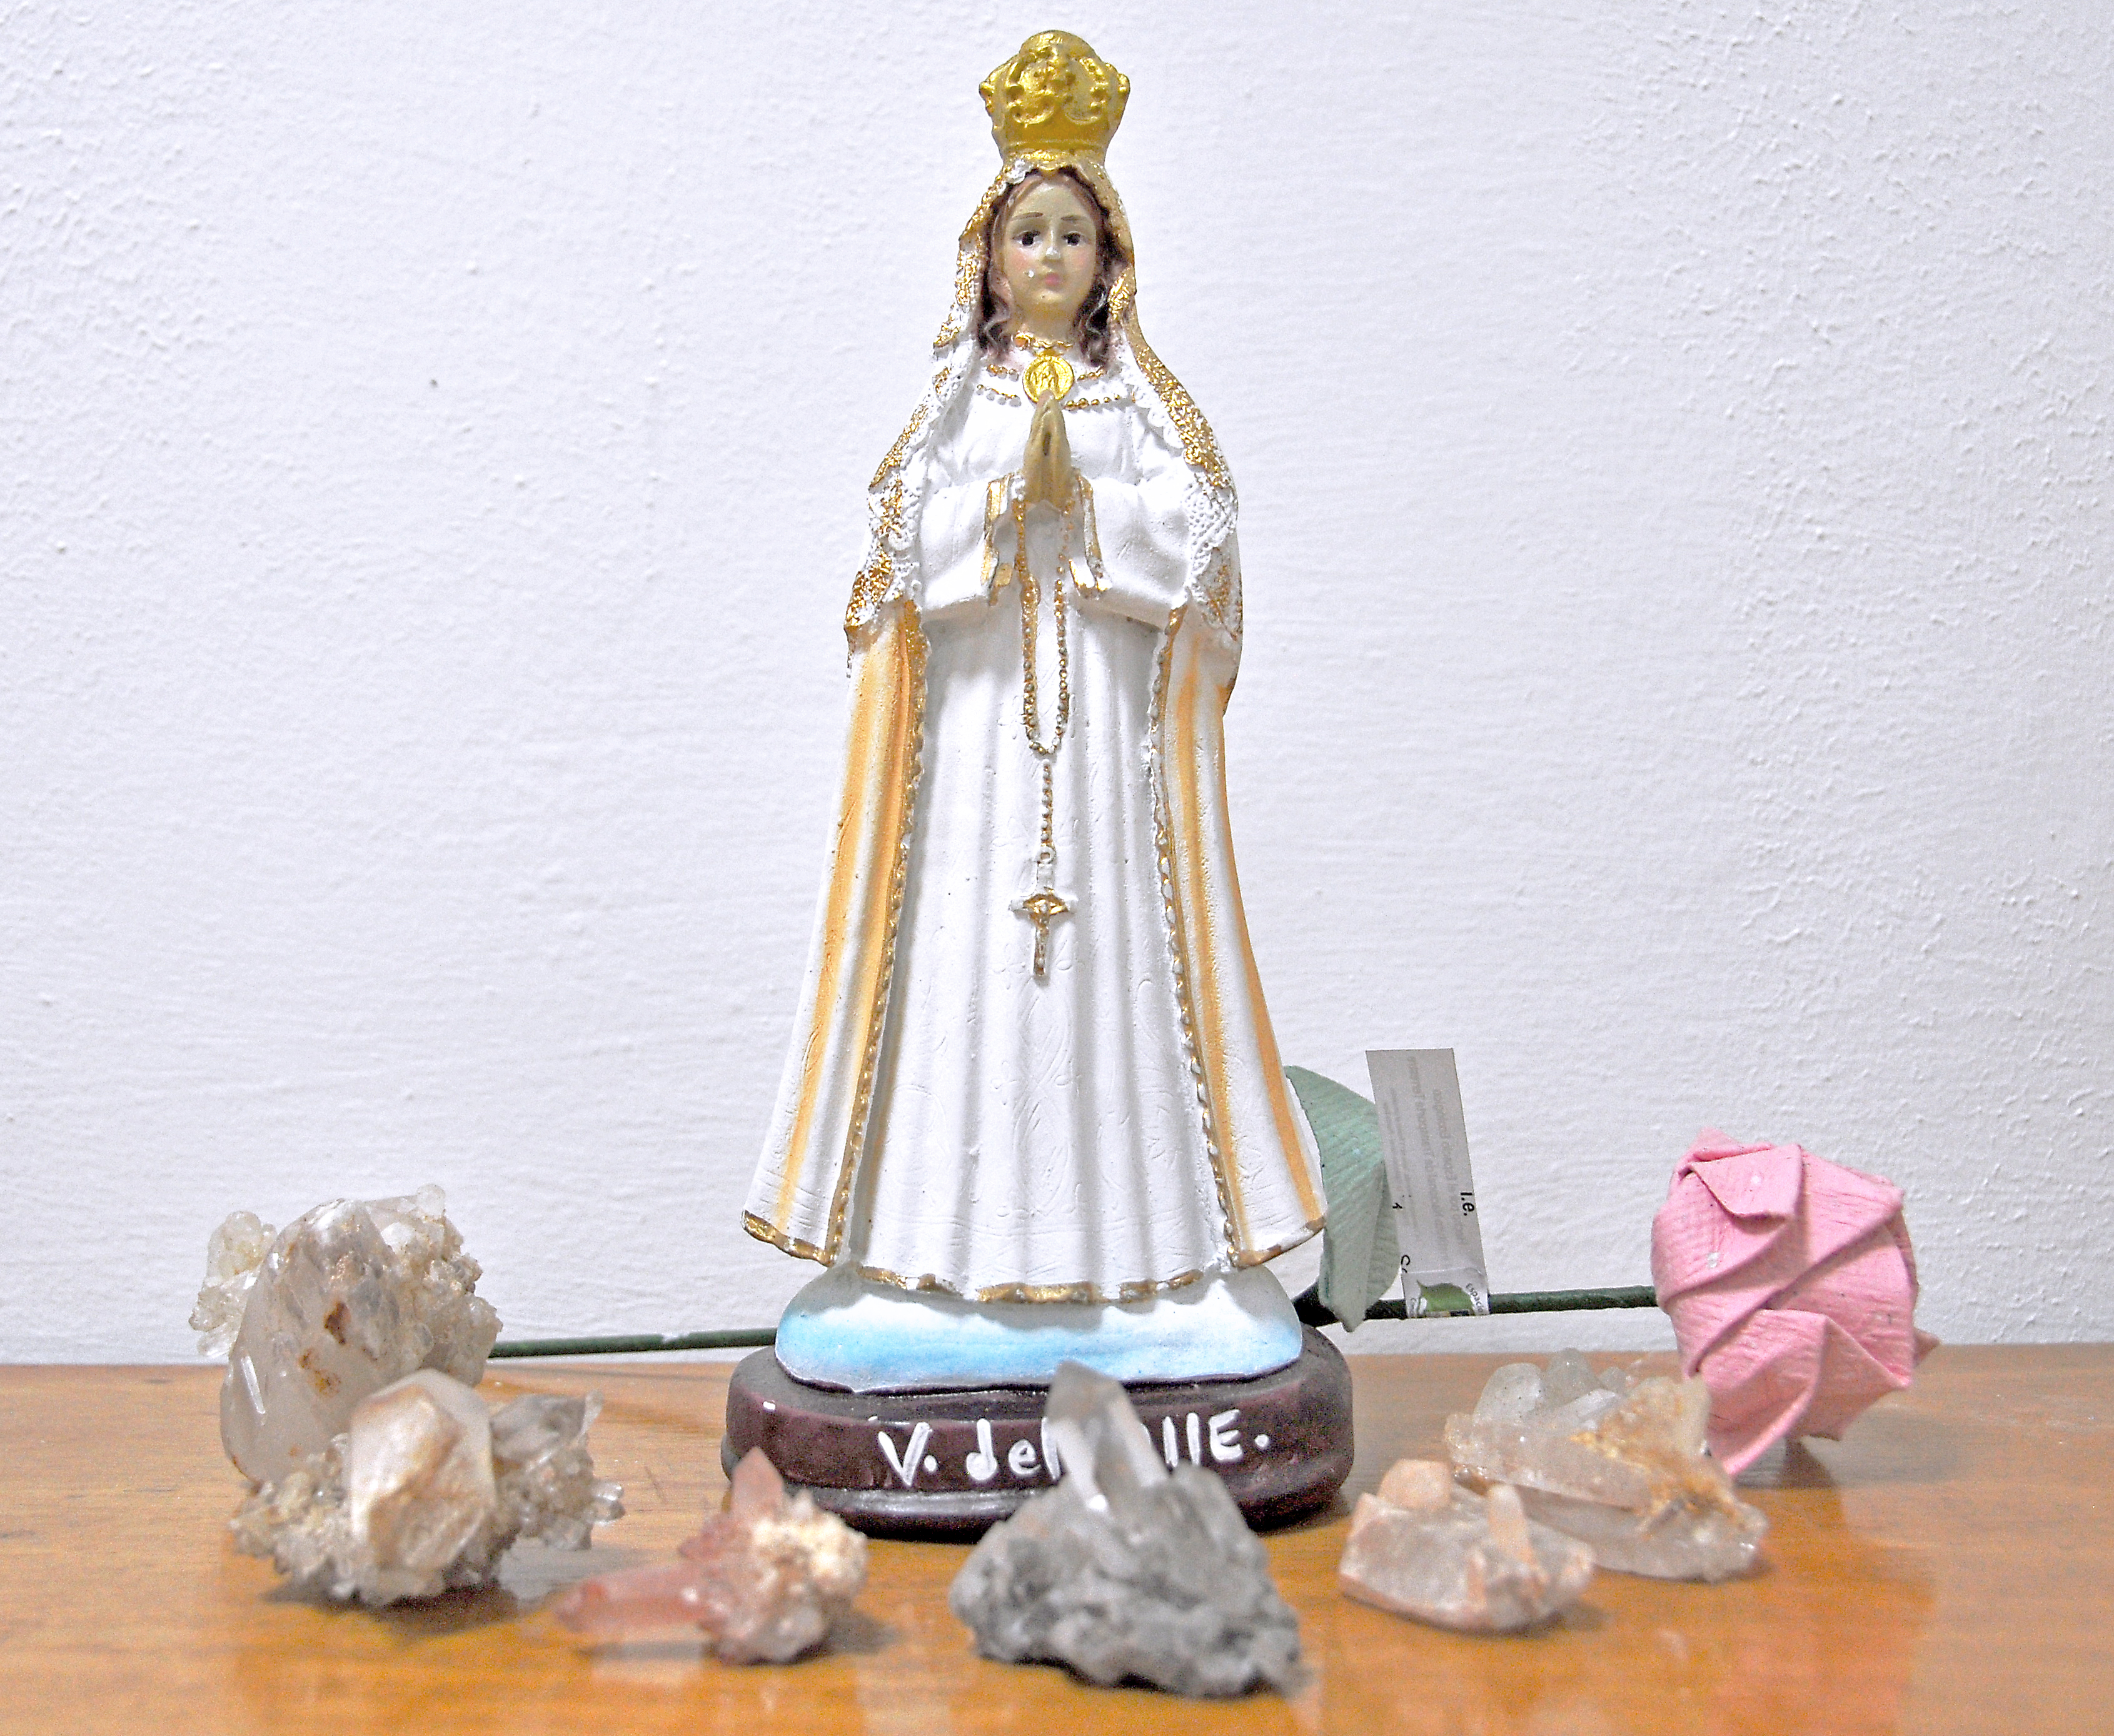 El amor a la Virgen del Valle se extiende por todo el país